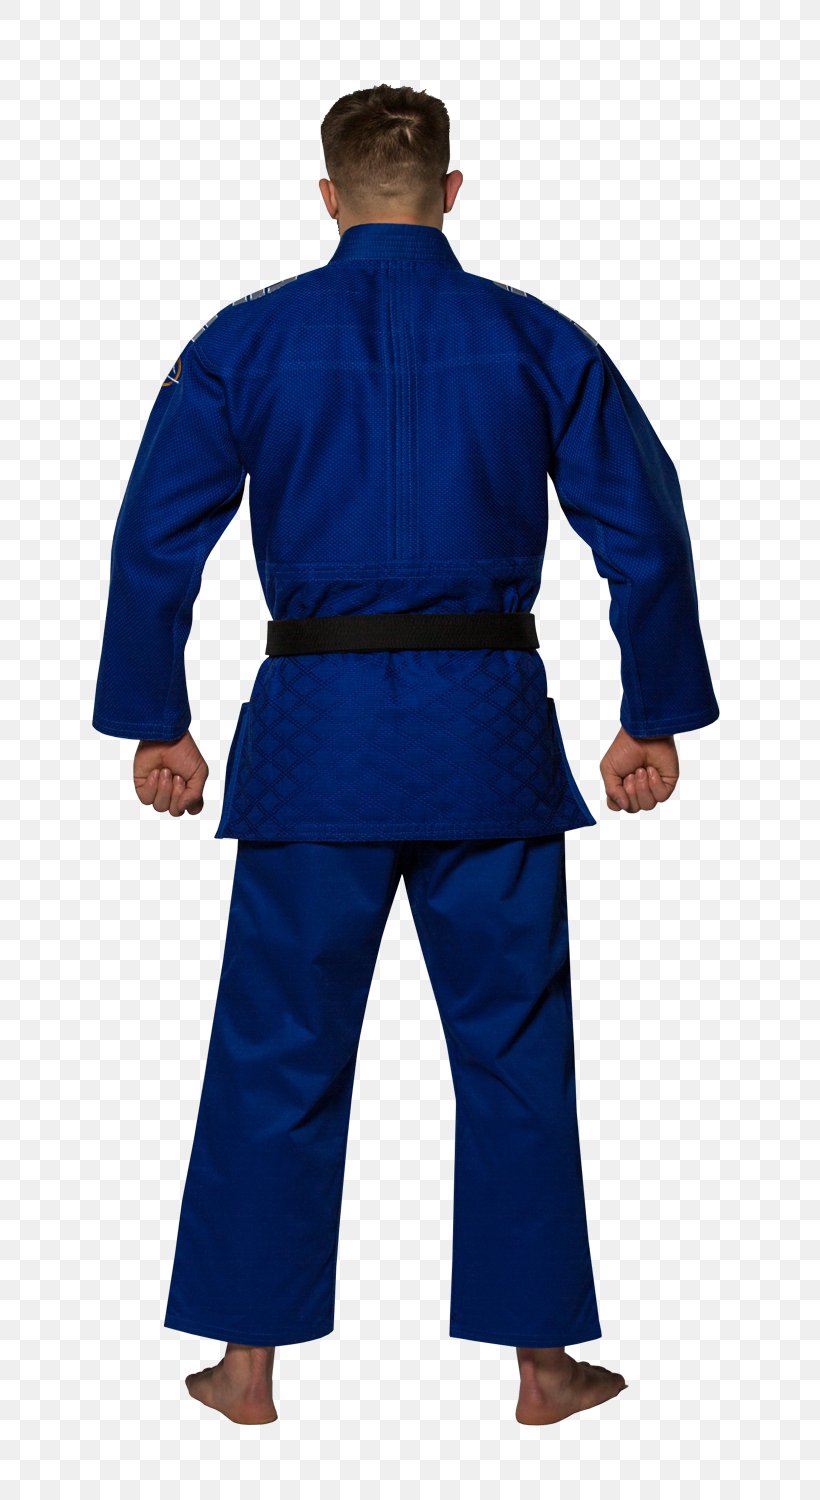 Uniform Clothing Brazilian Jiu-jitsu Gi Judogi, PNG, 750x1500px, Uniform, Blue, Brazilian Jiujitsu, Brazilian Jiujitsu Gi, Clothing Download Free